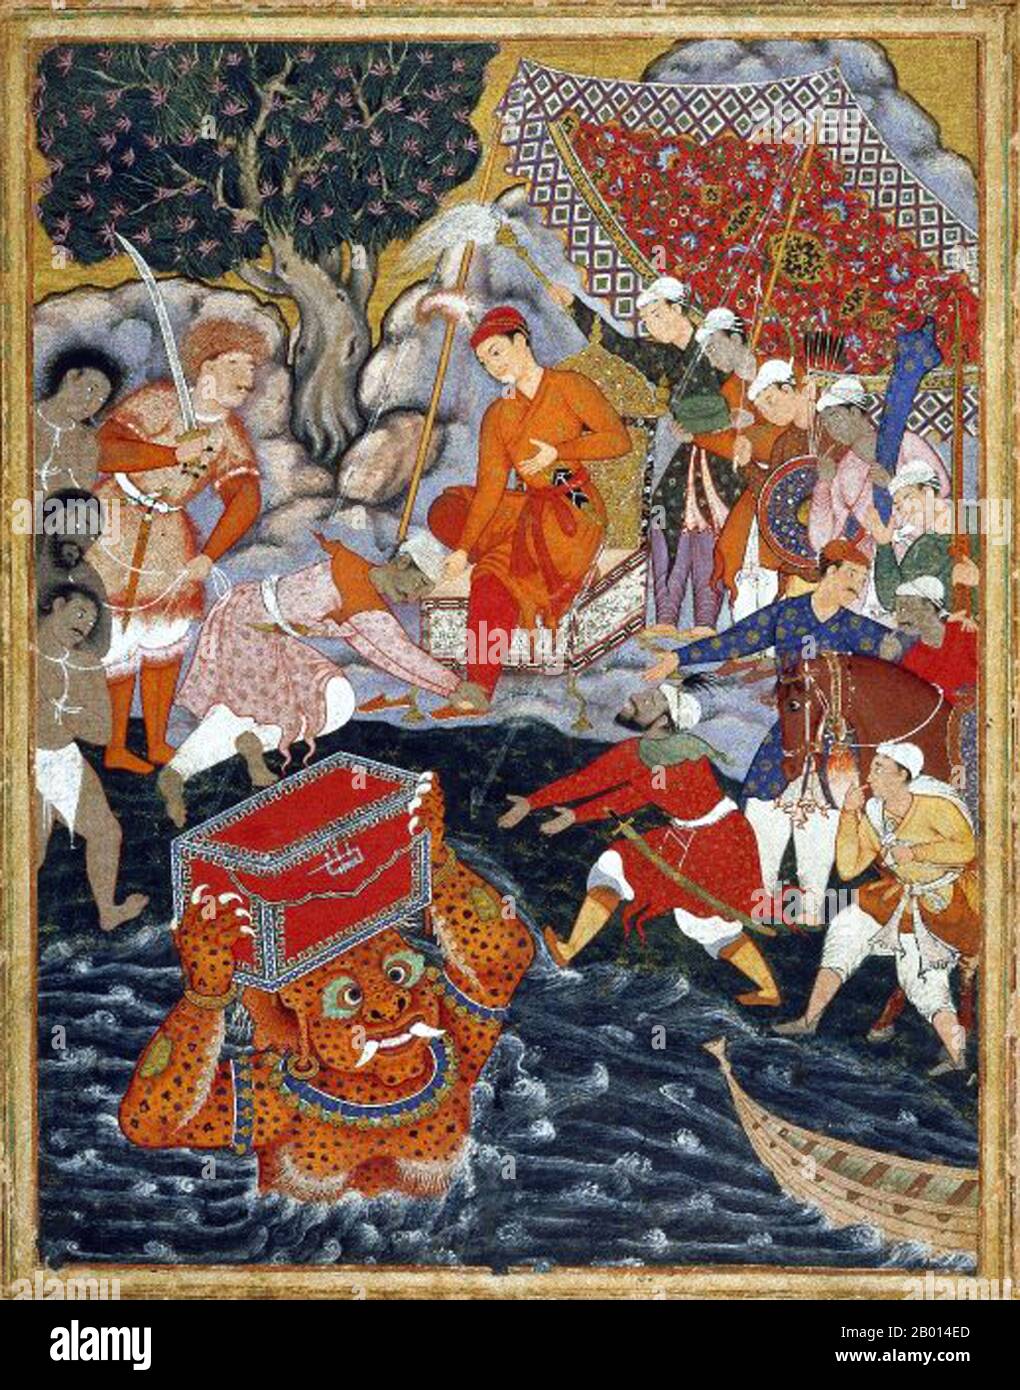 Inde: 'Arghan Div apporte la poitrine de l'armure à Hamza'. Gouache et peinture d'or représentant une scène du Hamzanama, c. 1562-1577. Le Hamzanama ou Dastan-e-Amir Hamza (aventures d'Amir Hamza) raconte les exploits mythiques d'Amir Hamza, l'oncle du prophète de l'Islam. La plus grande partie de l'histoire est extrêmement fantaisiste, décrit de manière mémorable par le premier empereur Moghul Babur comme: «un long mensonge insensé, opposé au sens et à la nature». Pourtant, le Hamzanama s'est révélé extrêmement populaire auprès du petit-fils de Babur, le troisième empereur moghol Akbar, qui a commandé une magnifique version illustrée de l'épopée. Banque D'Images